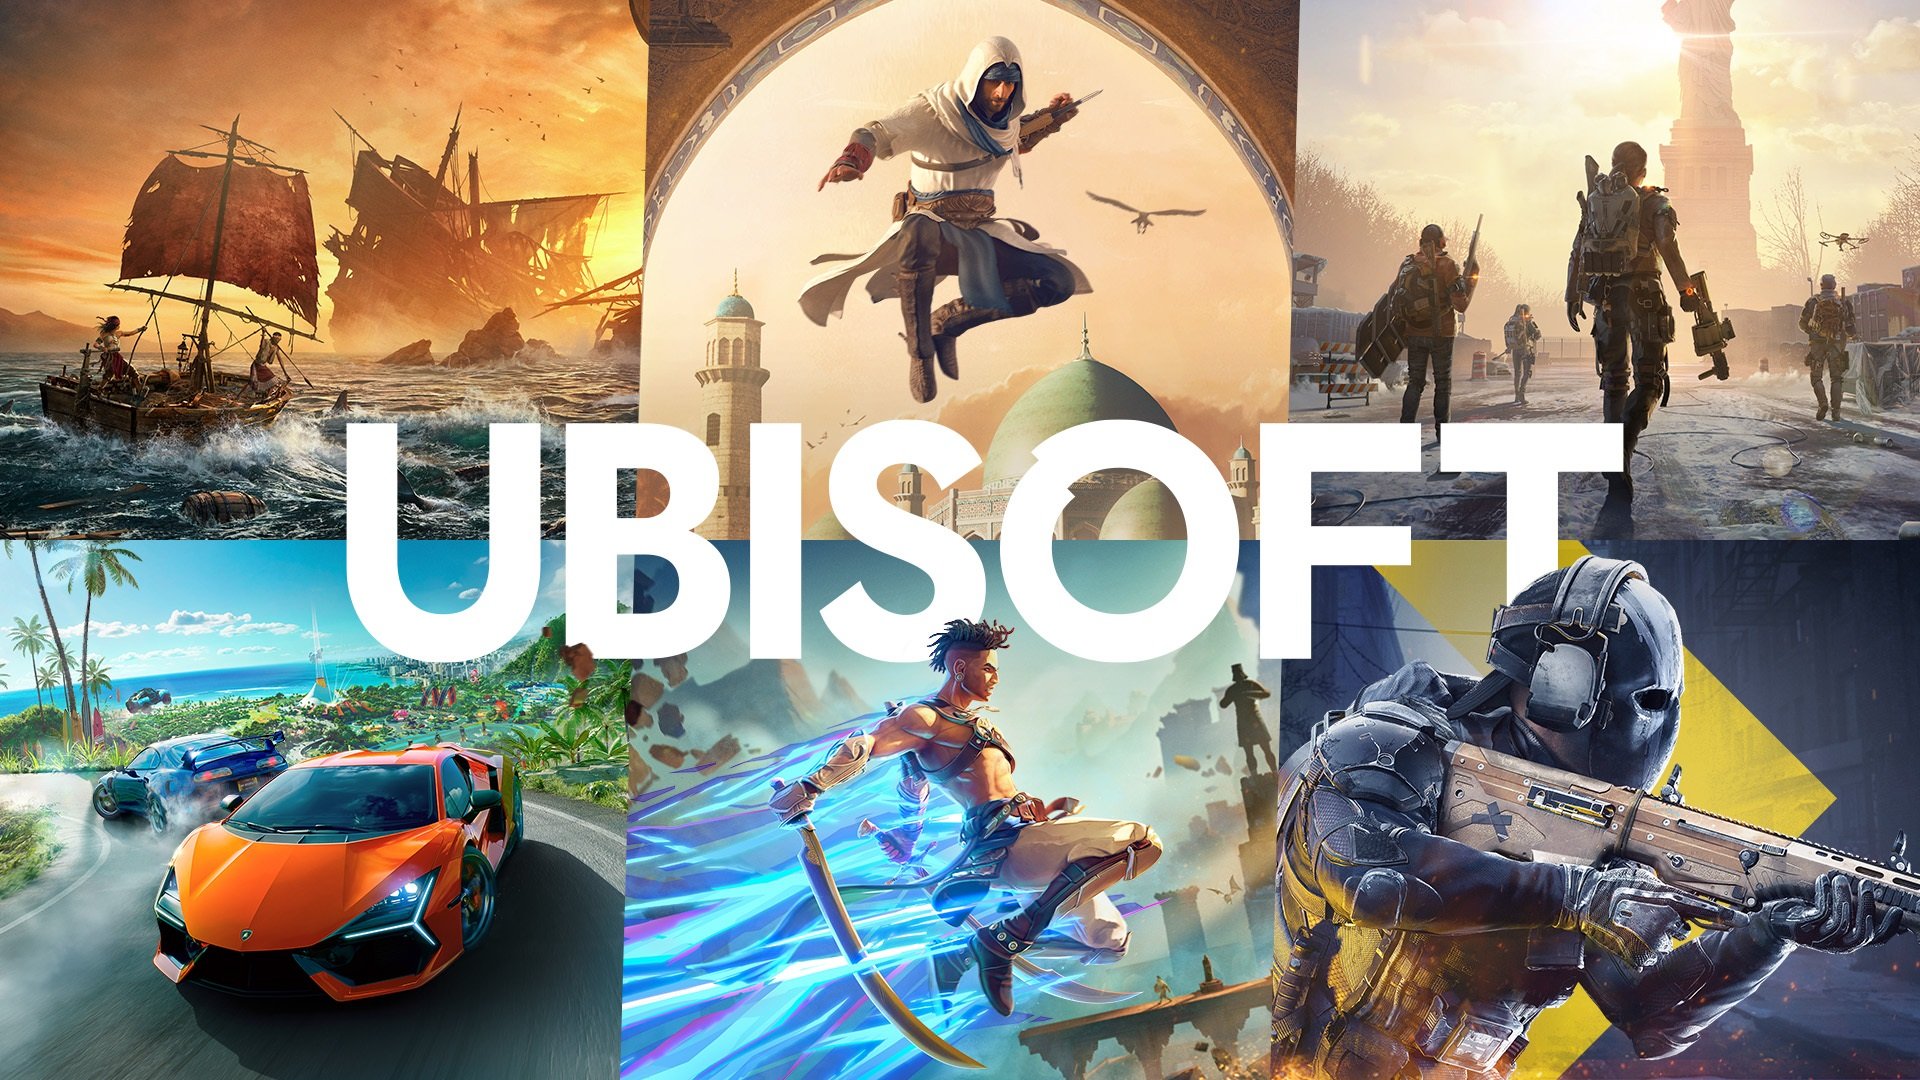 يقول الرئيس التنفيذي إن الاستحواذ على Activision Blizzard من Microsoft مفيد لشركة Ubisoft